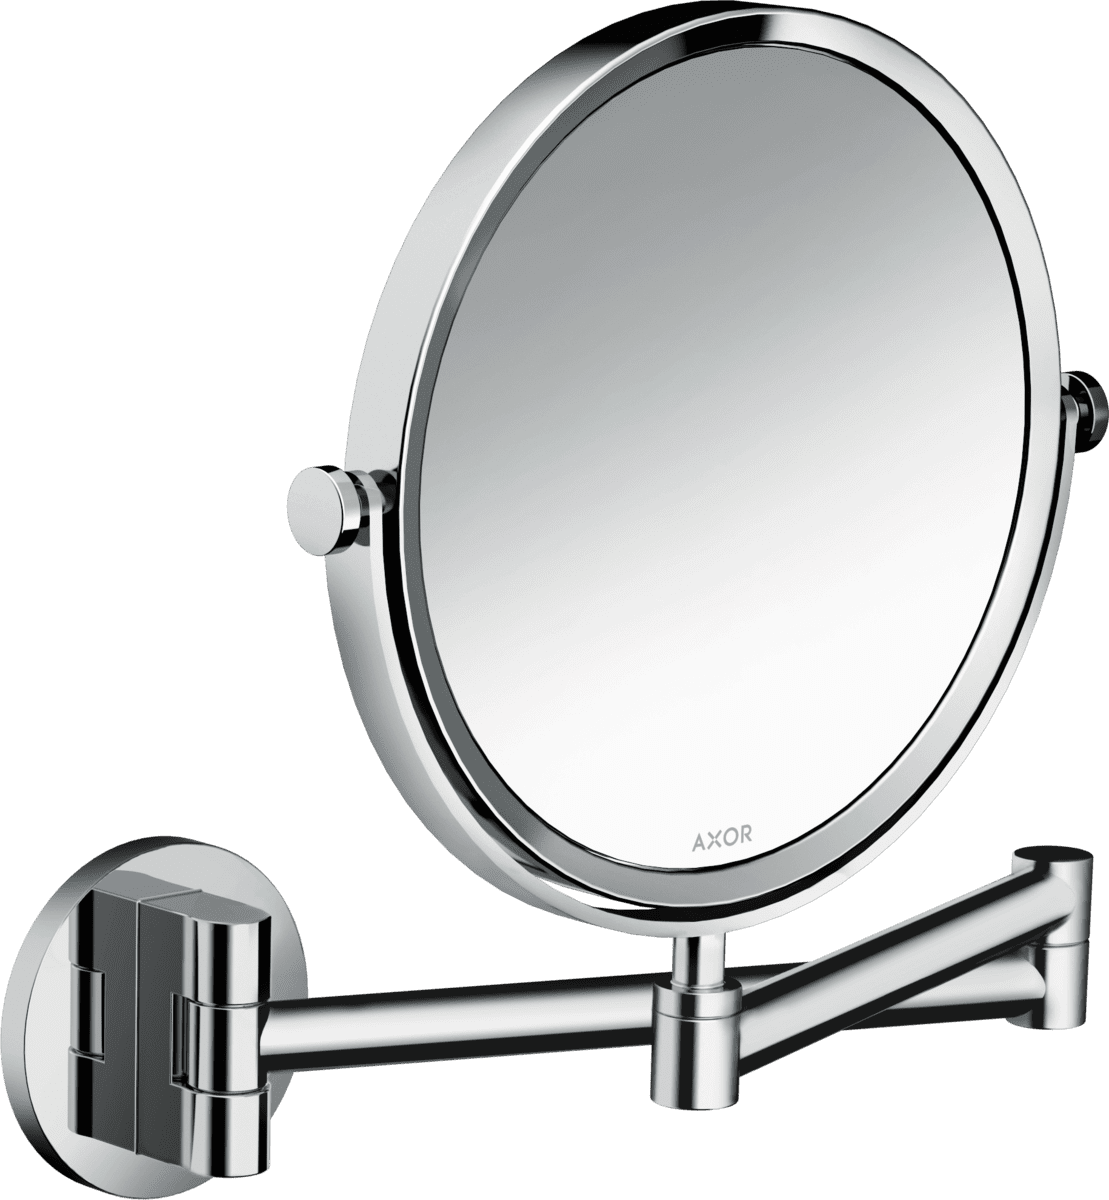 εικόνα του HANSGROHE AXOR Universal Circular Shaving mirror #42849000 - Chrome